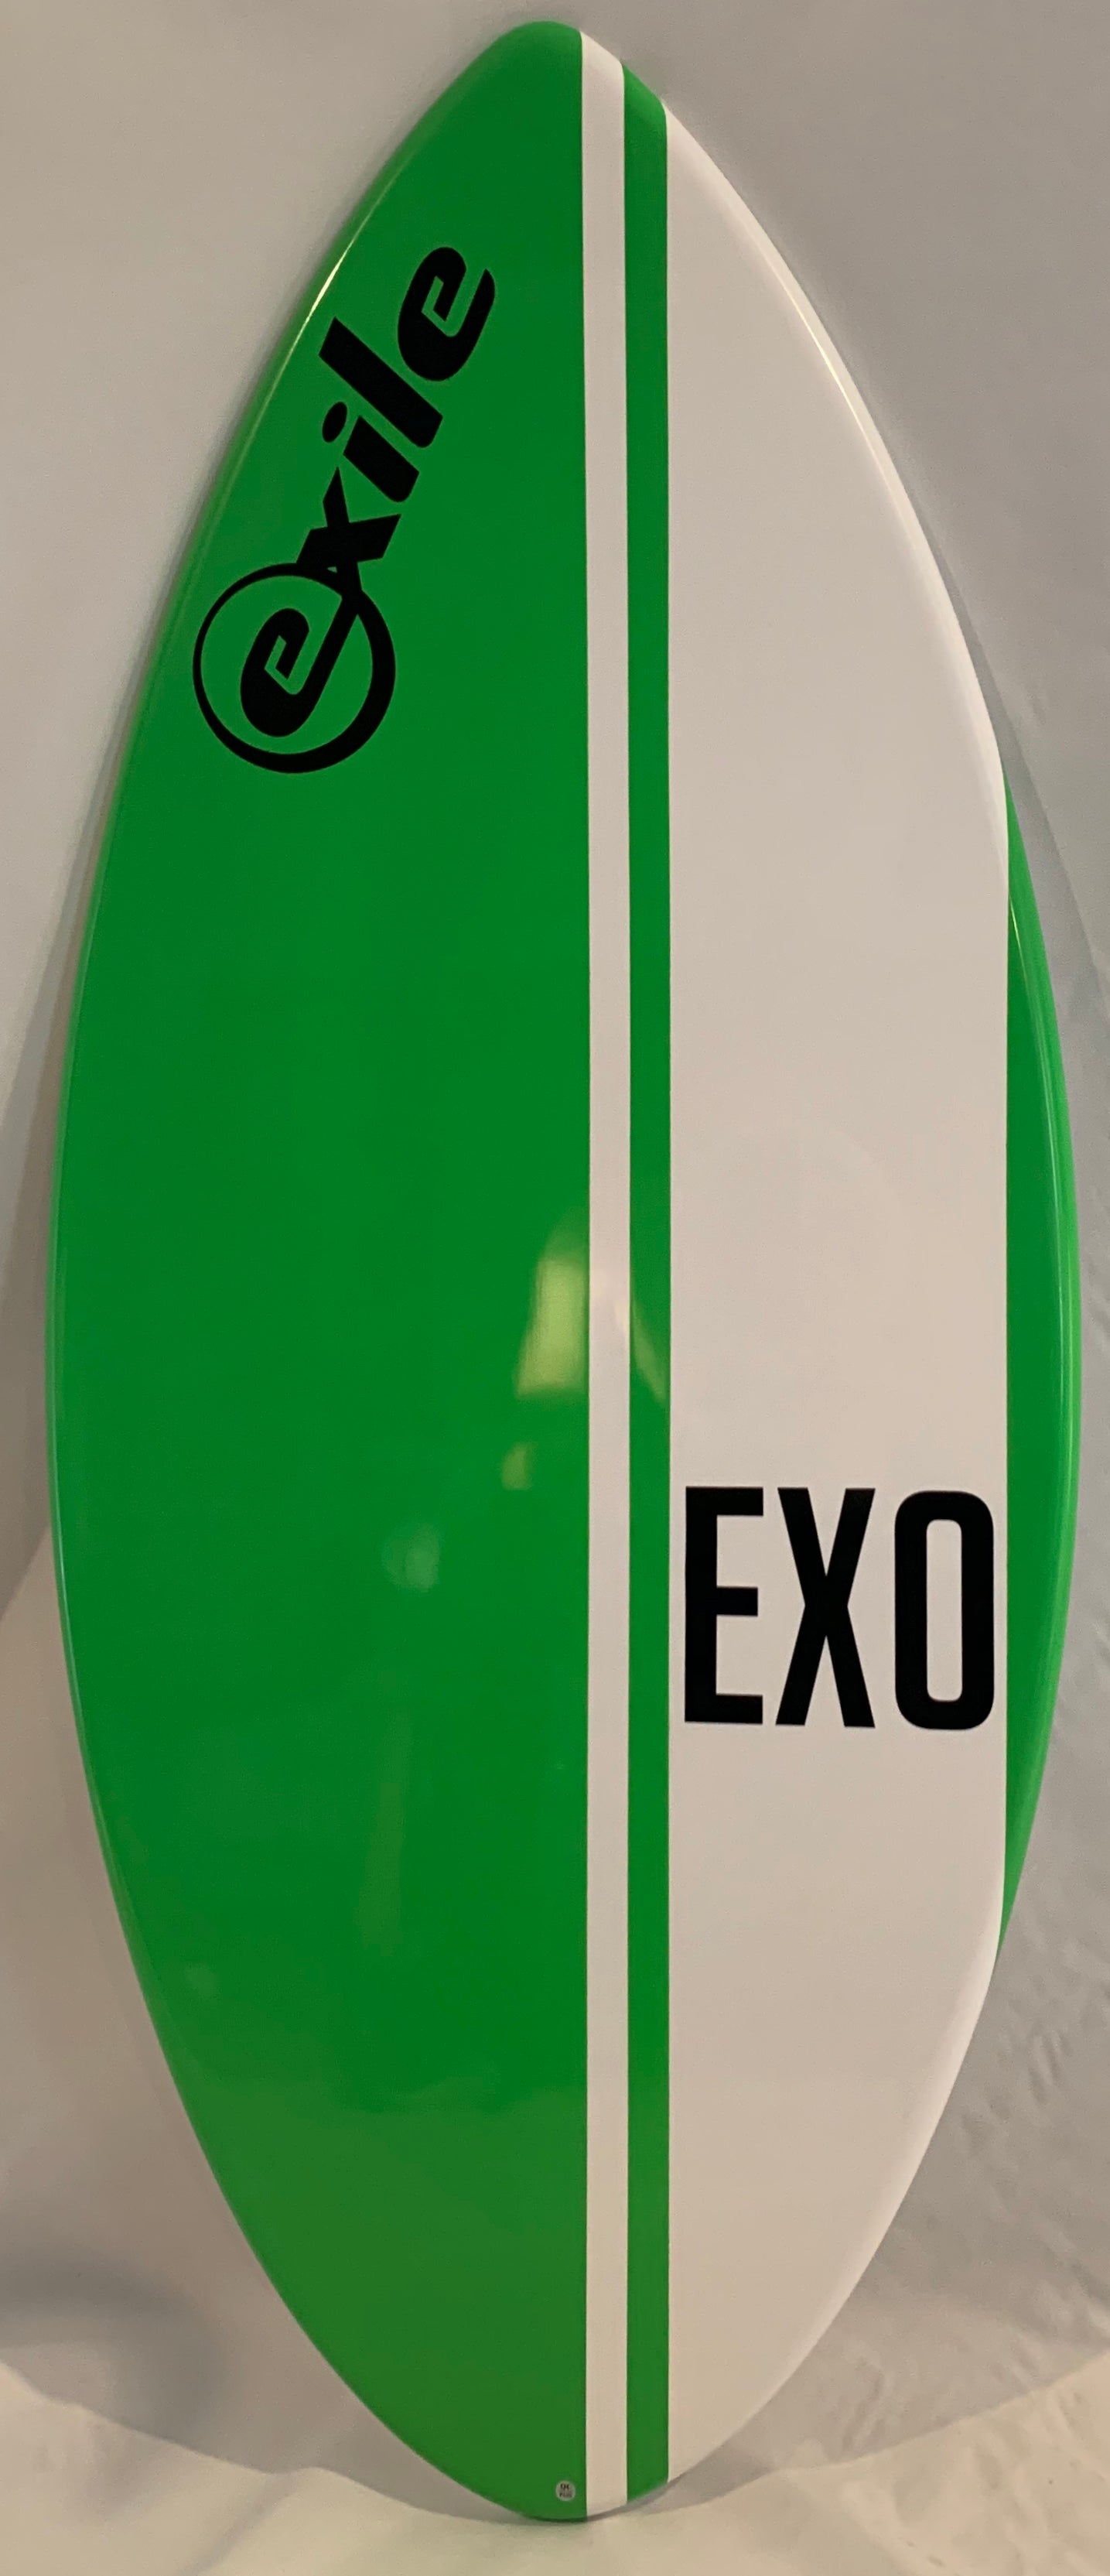 EXILE EX0 SKIMBOARD - Star Surf + Skate